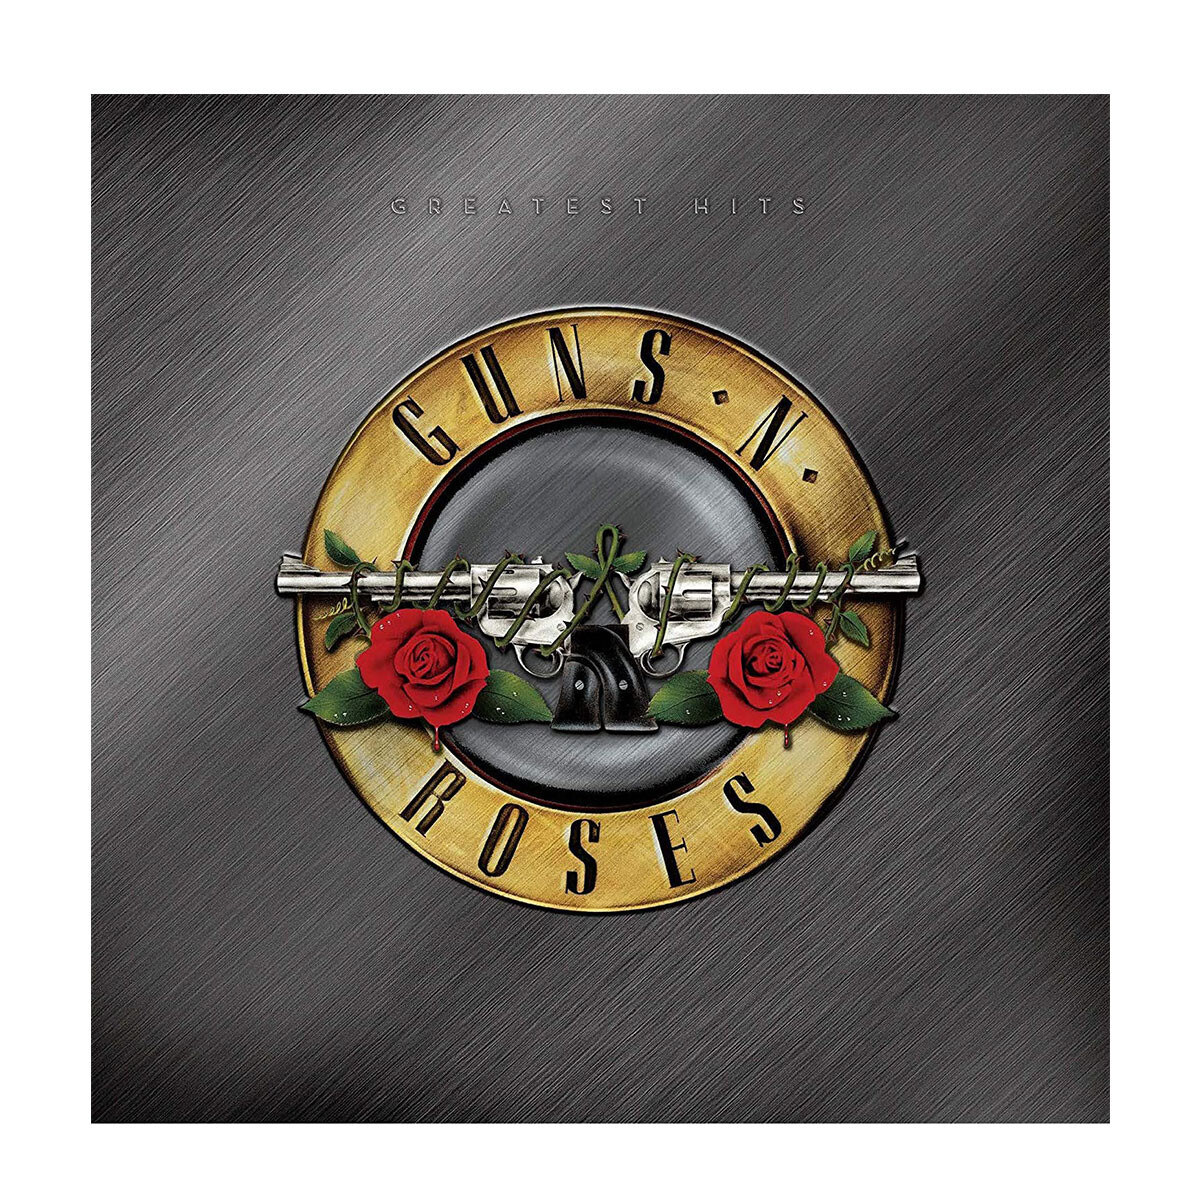 Guns N Roses - Greatest Hits - Vinilo 